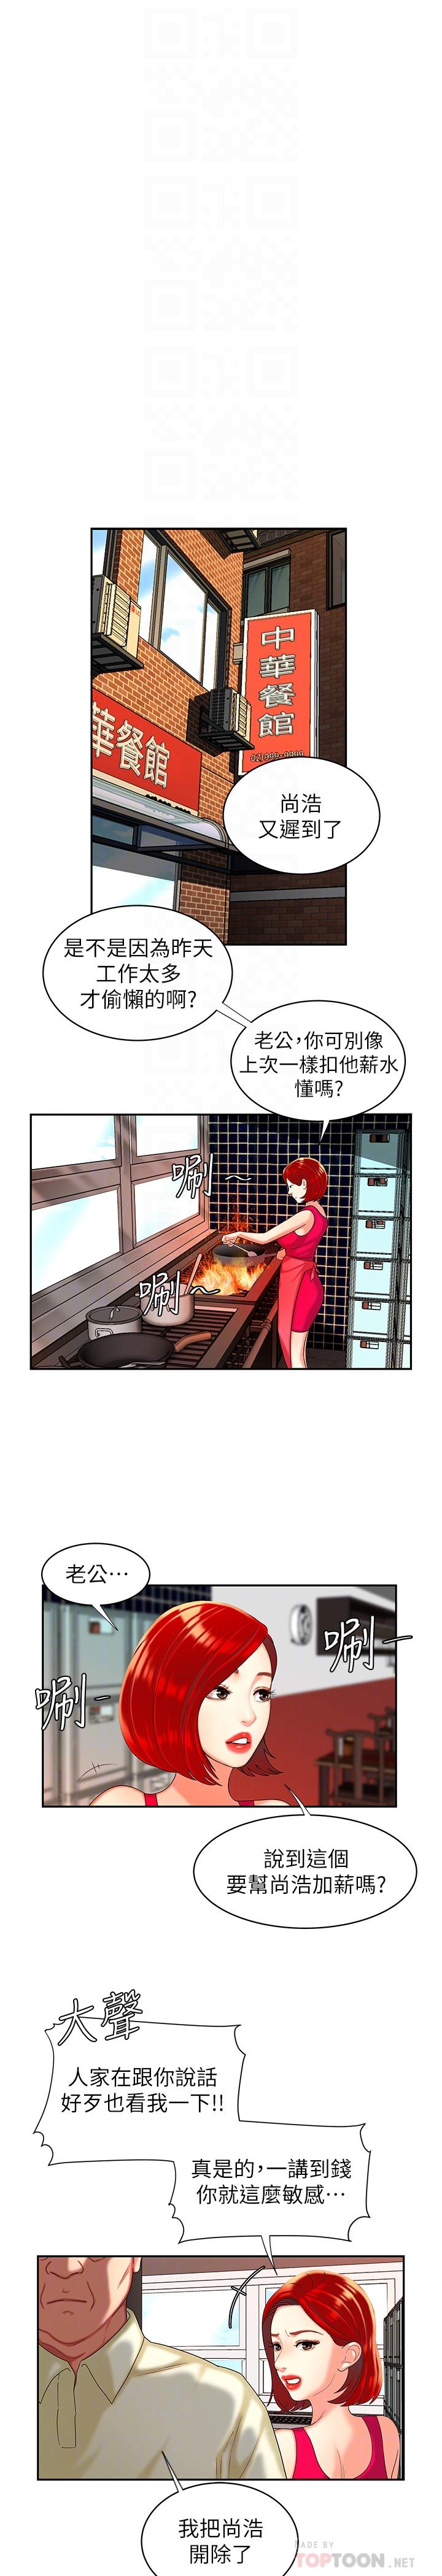 韩国污漫画 幸福外送員 第10话-在炸鸡店重新开始 14